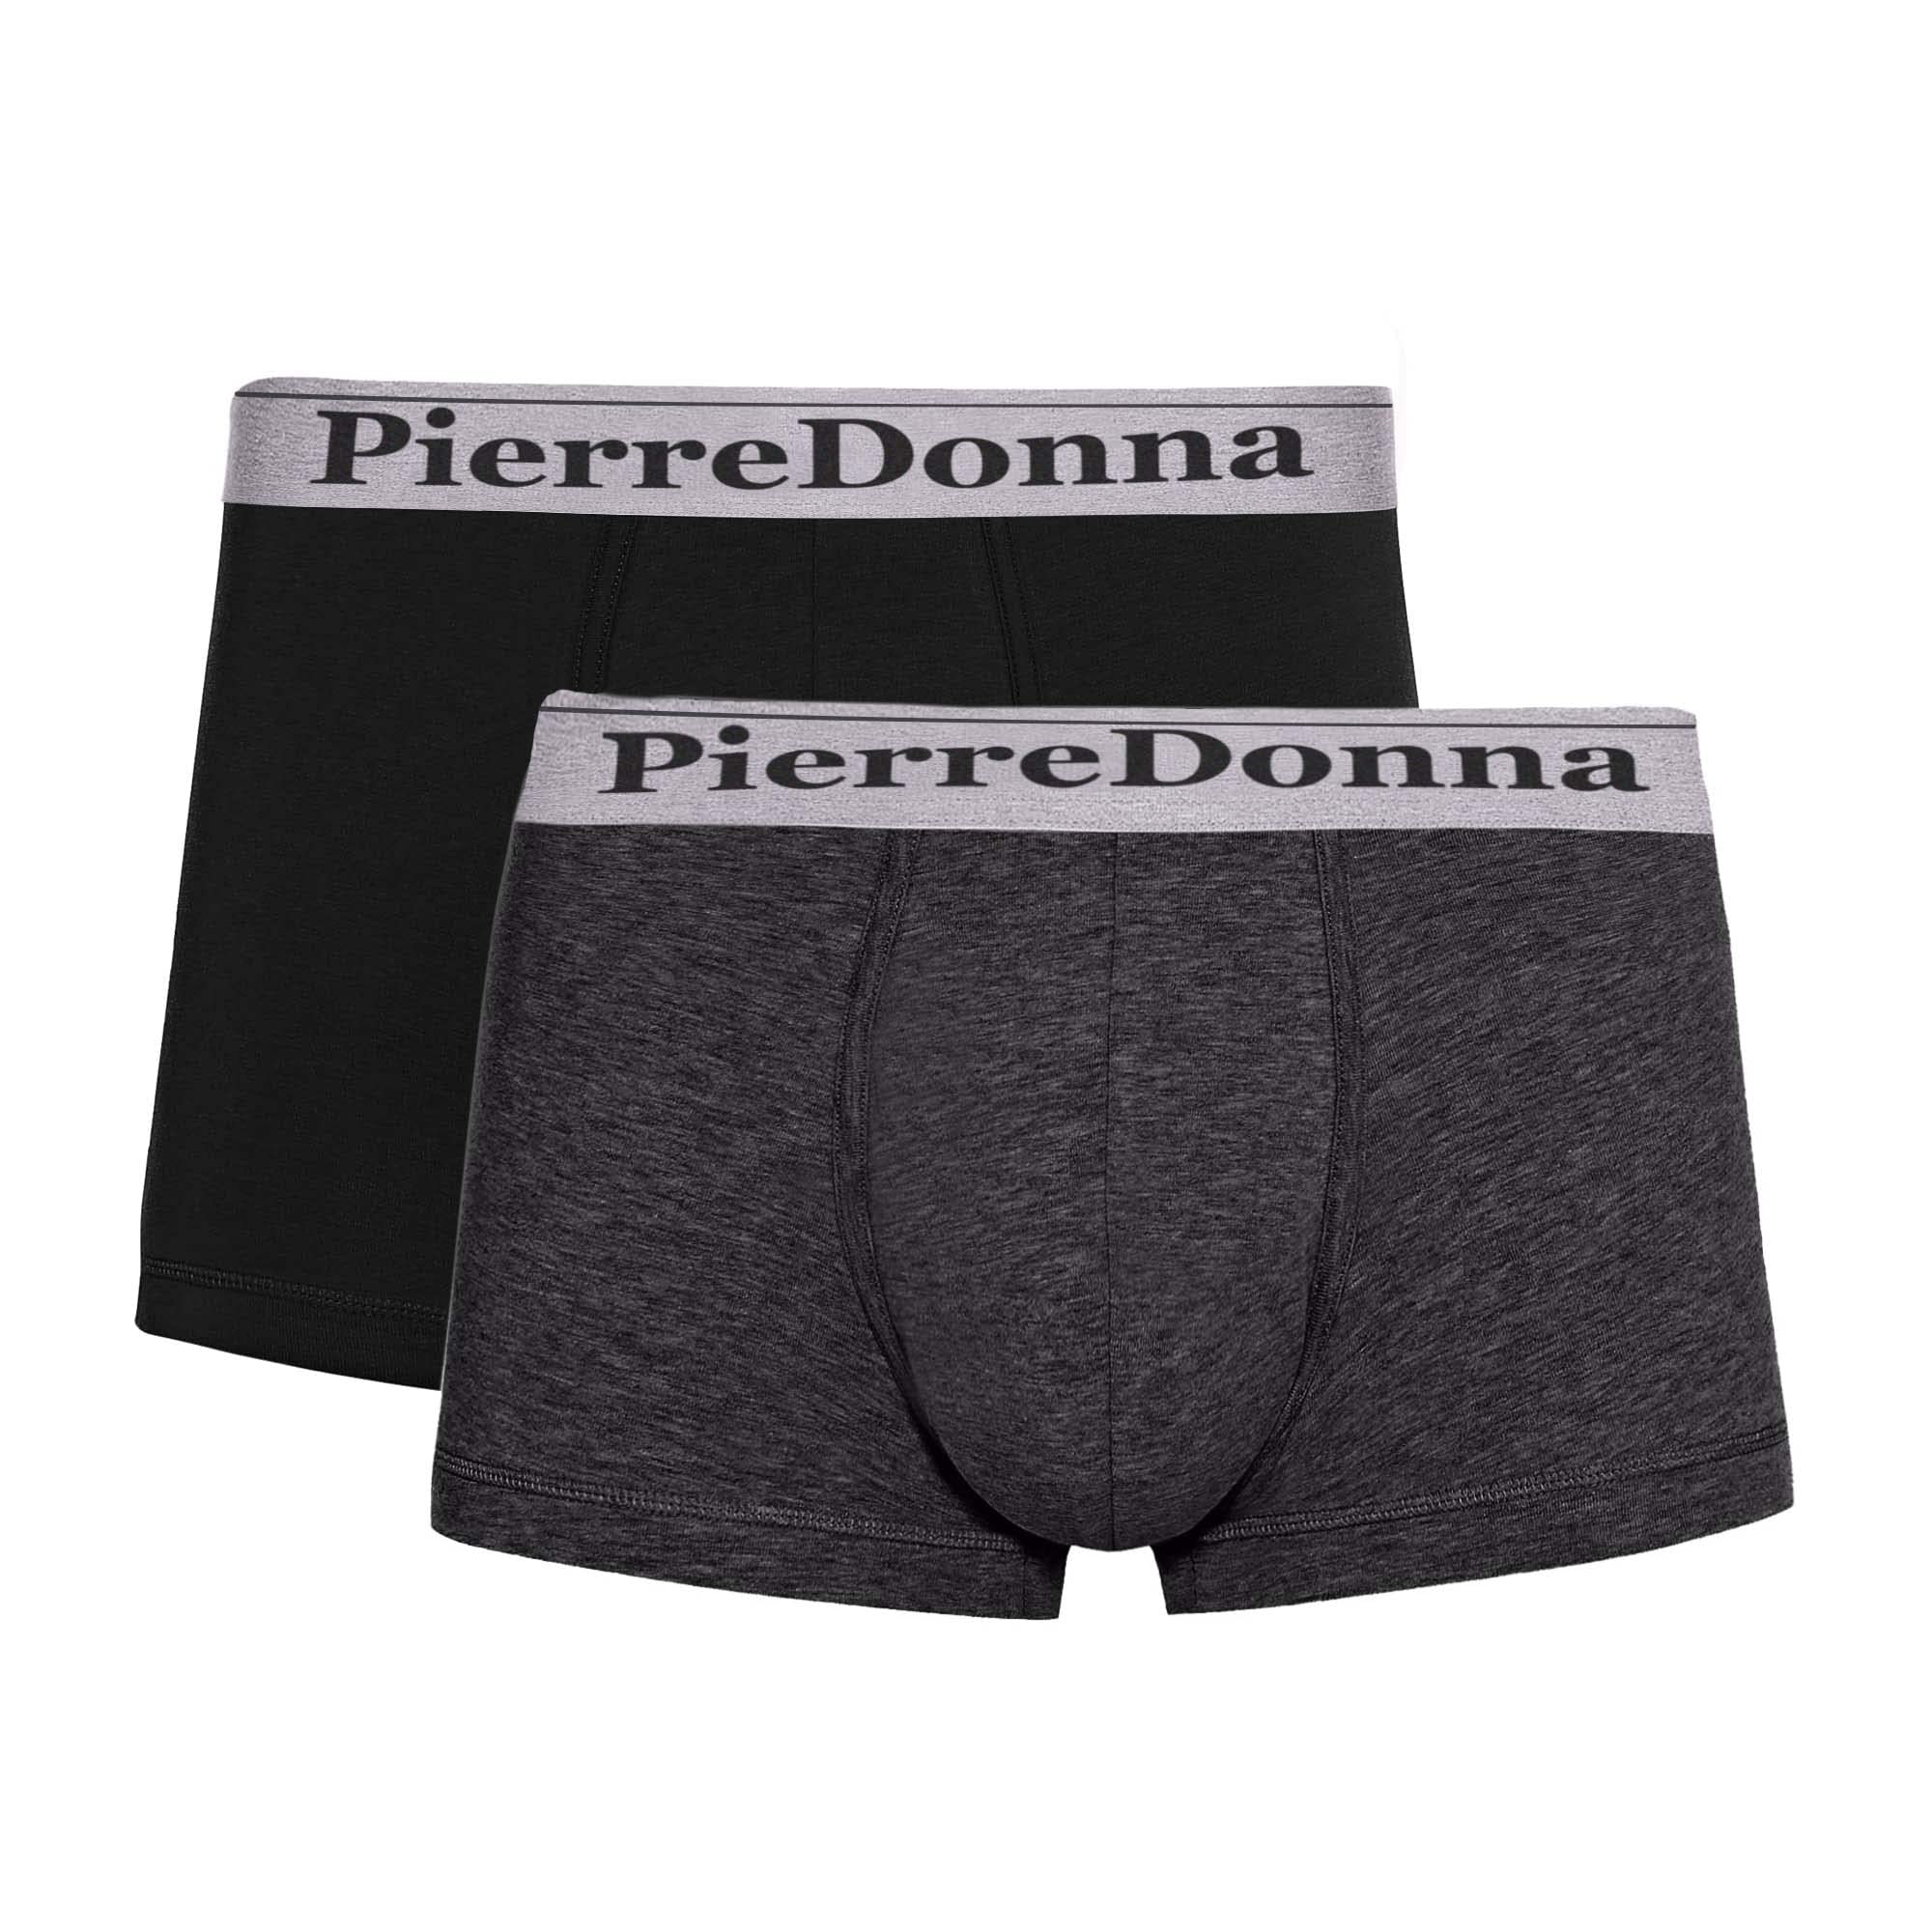 Pierre Donna Boxer Underwear For Men (pack of 2)(black & dark grey)